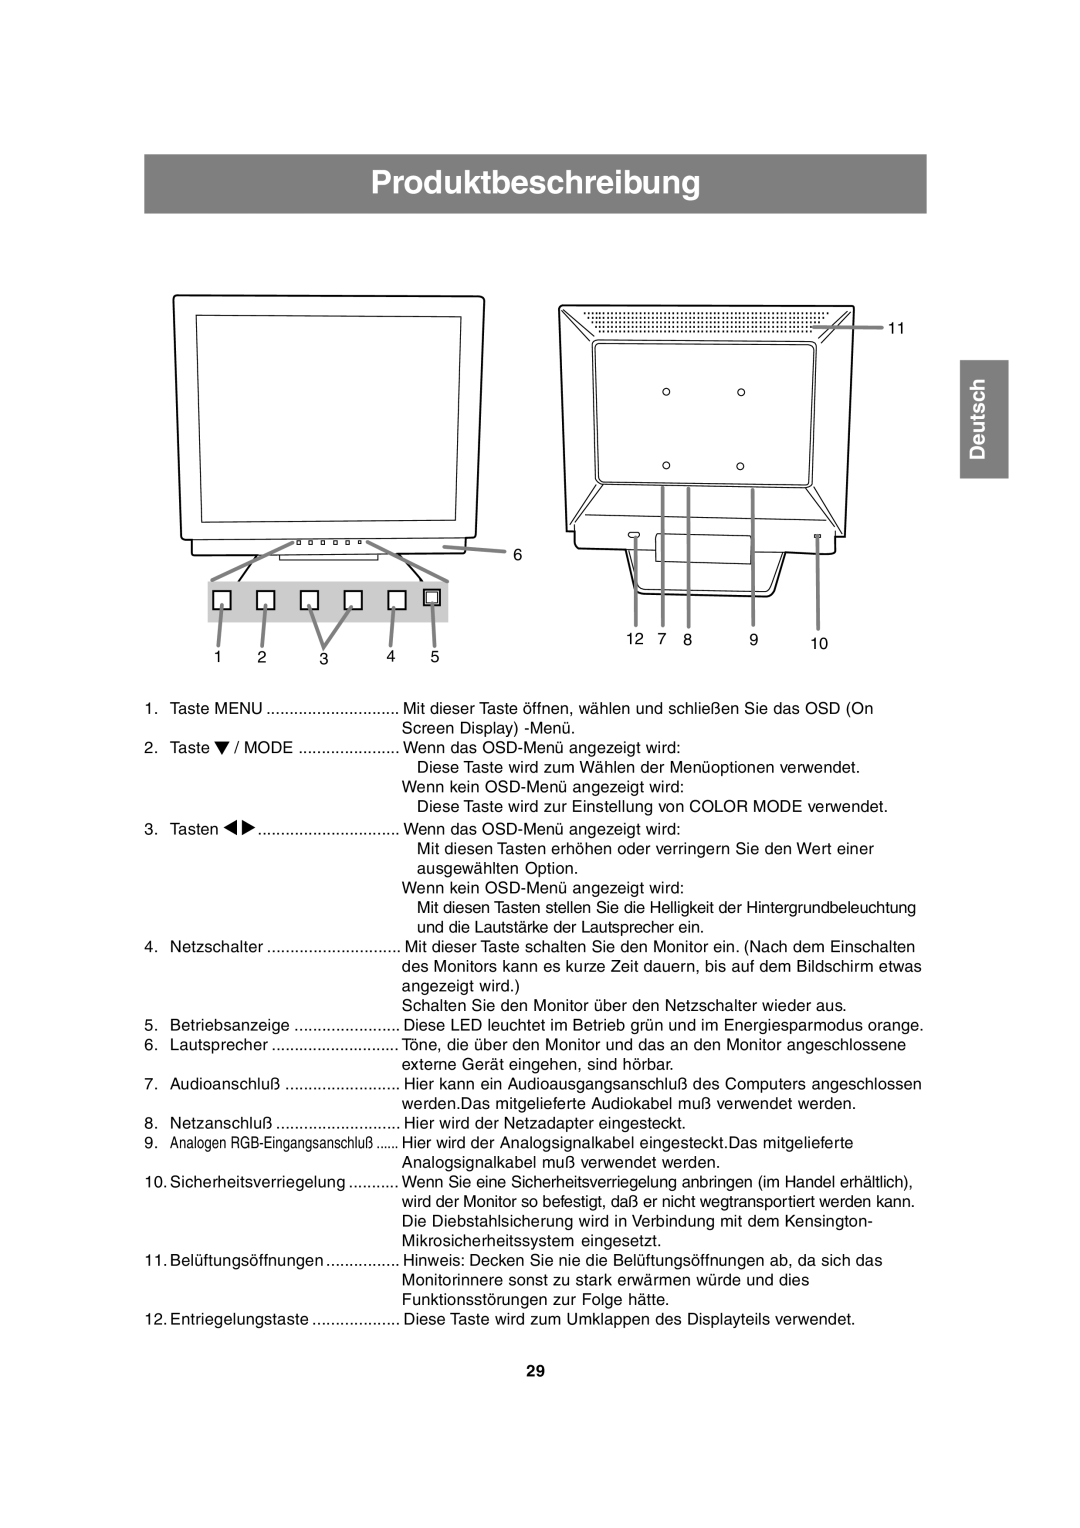 Sharp LL-T17A3 operation manual Produktbeschreibung 